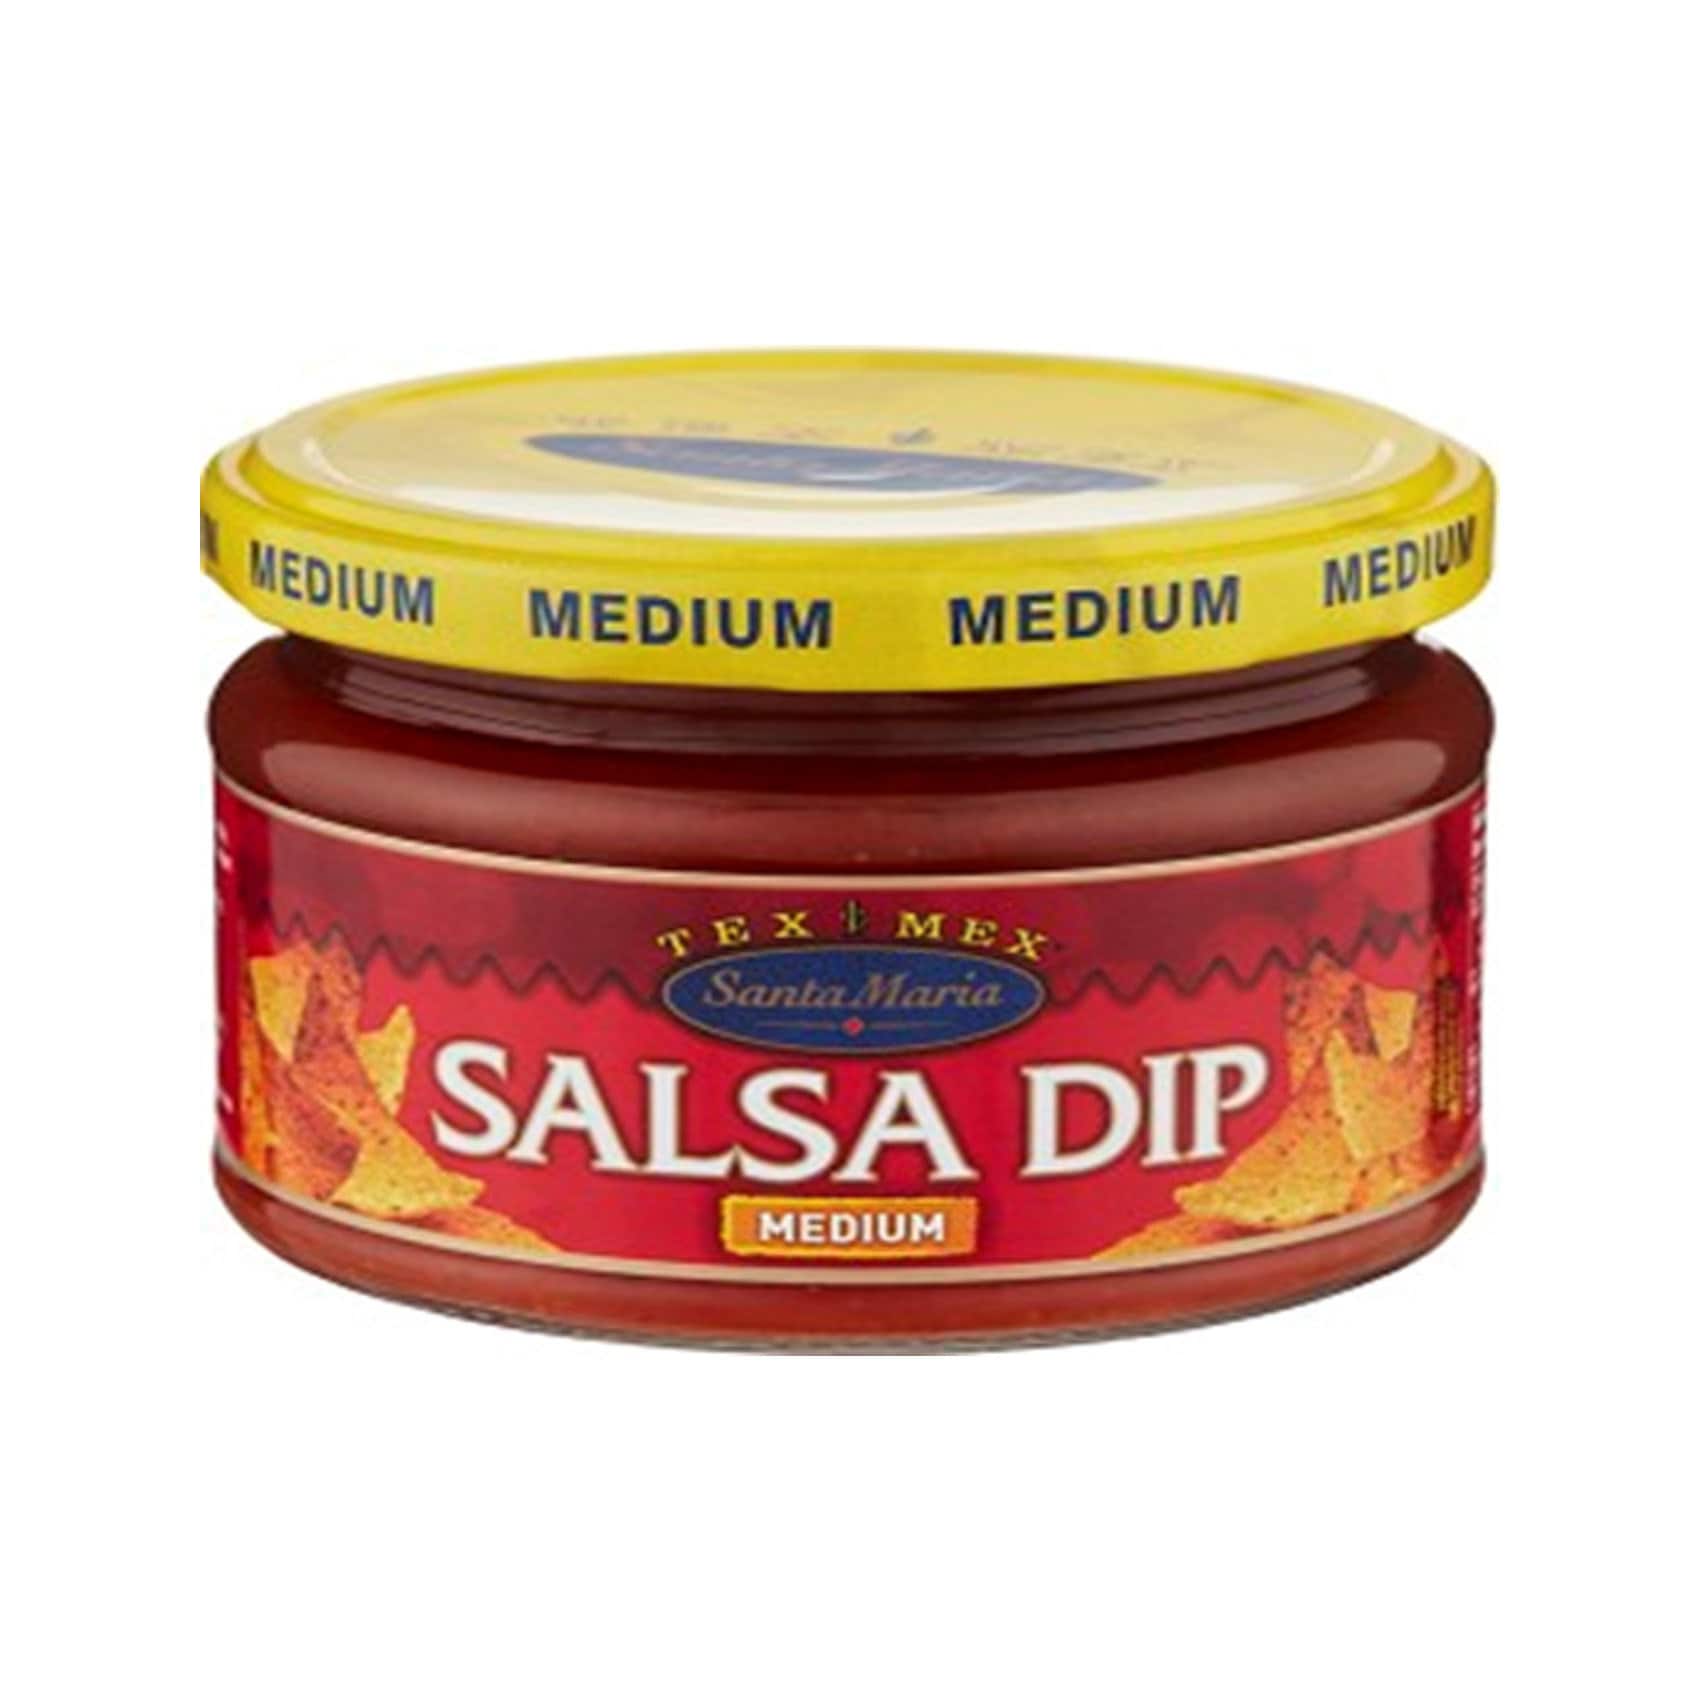 Buy Santa Maria Dip Salsa 250g Online - Shop Food Cupboard on Carrefour UAE